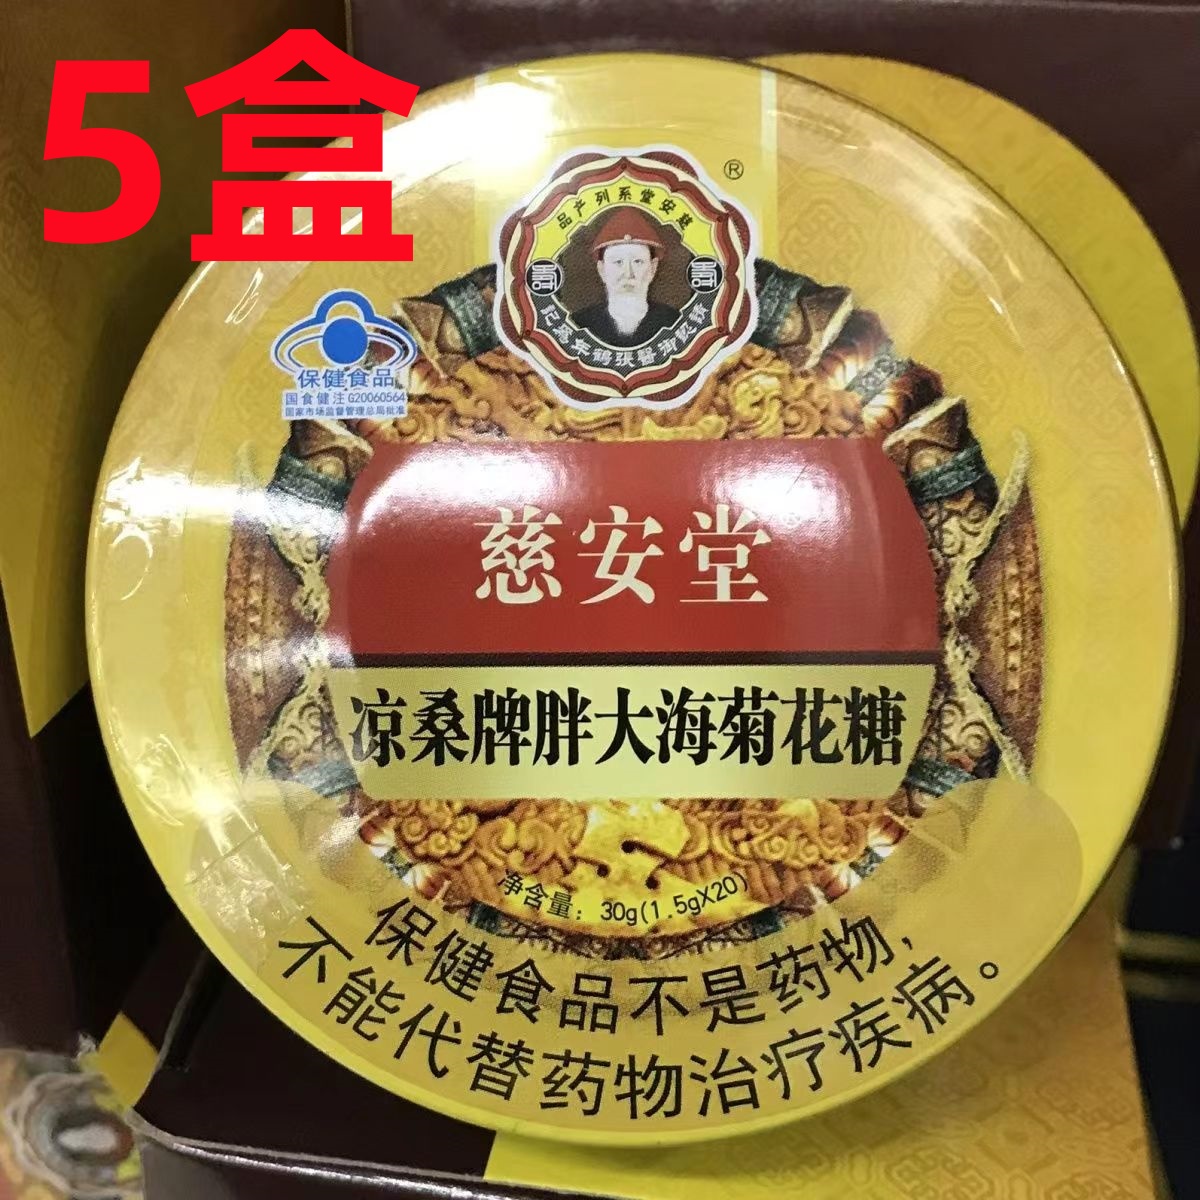 【5盒】慈安堂 摩音凉桑牌胖大海菊花糖(1.5gx20)净含量30g